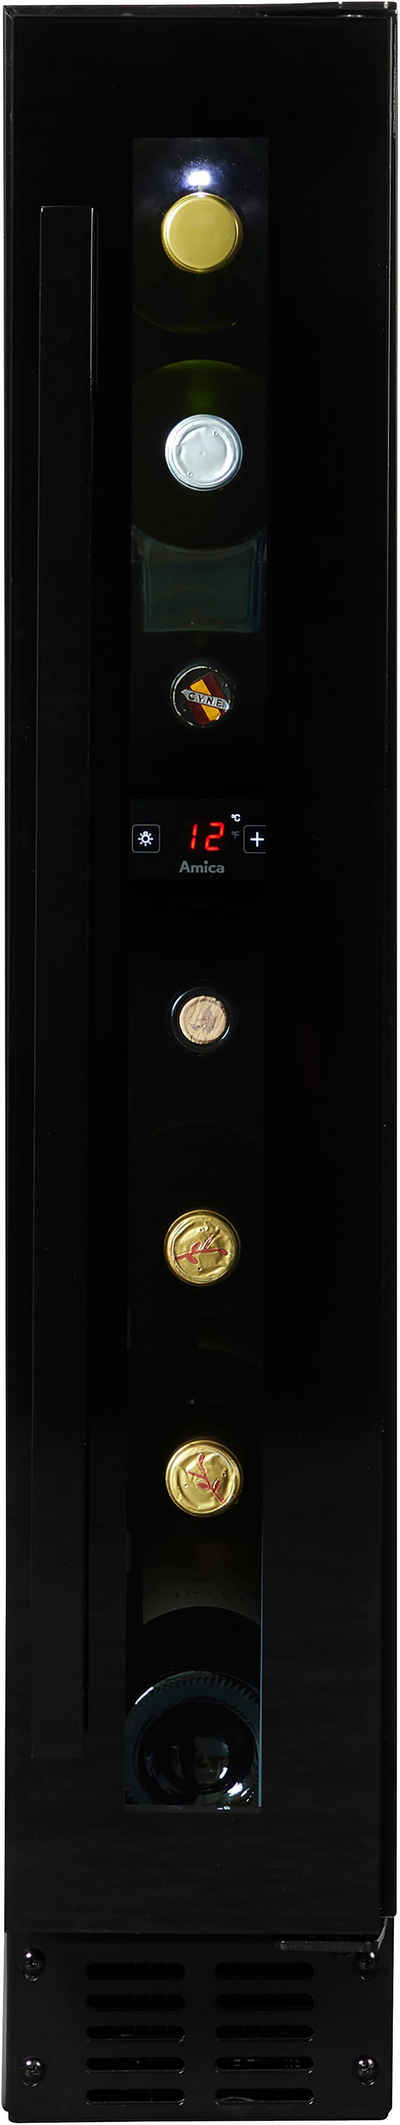 Amica Weinkühlschrank WK 341 100-1 S,für 7 Standardflaschen á 0,75l, Standkühlschrank